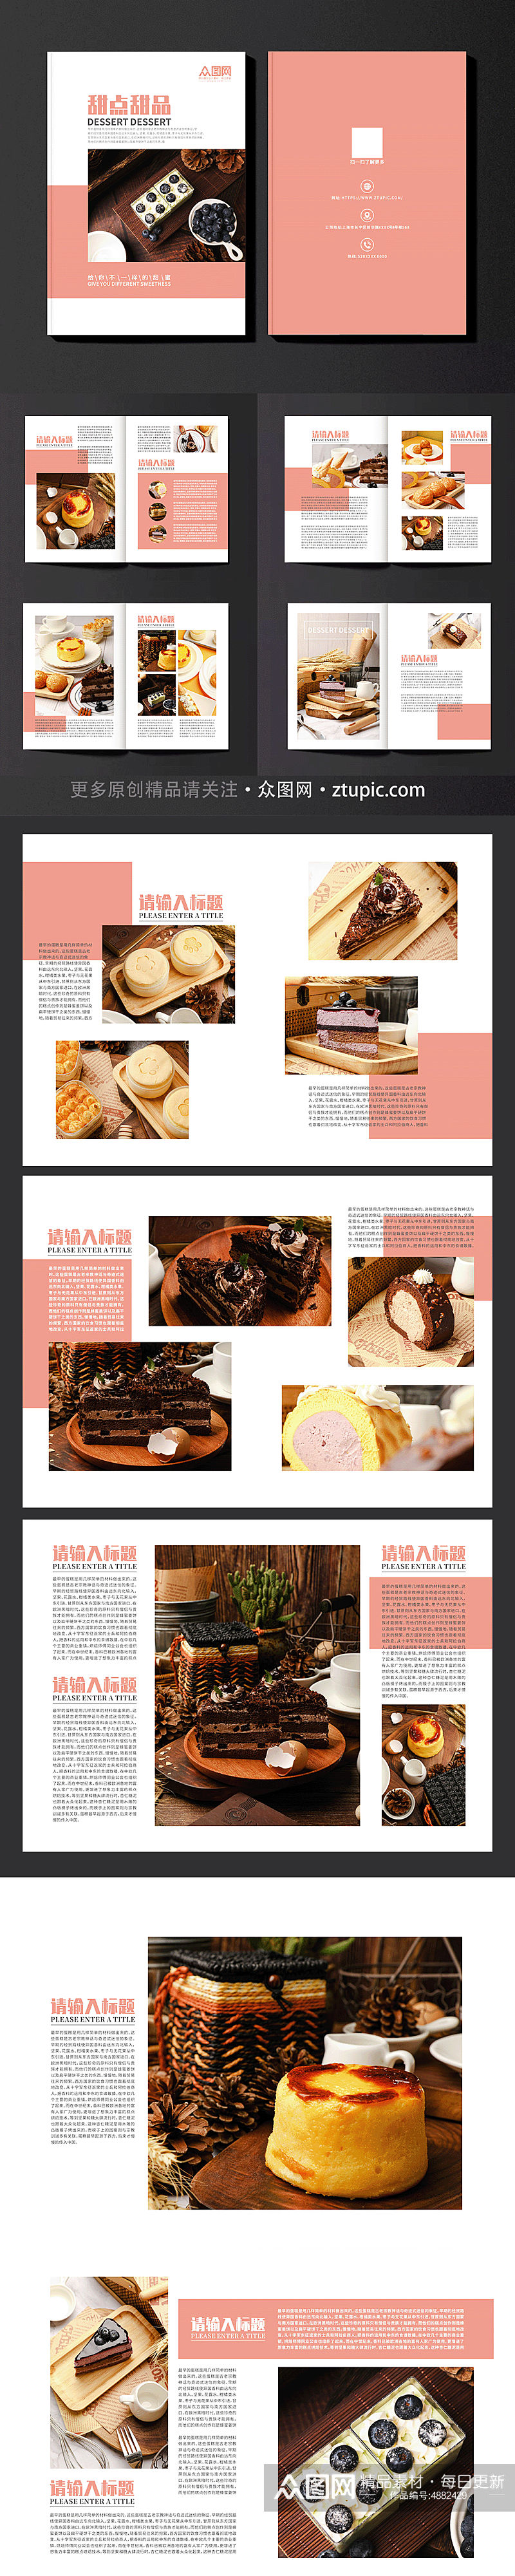 烘培甜点甜品蛋糕下午茶美食宣传册画册素材